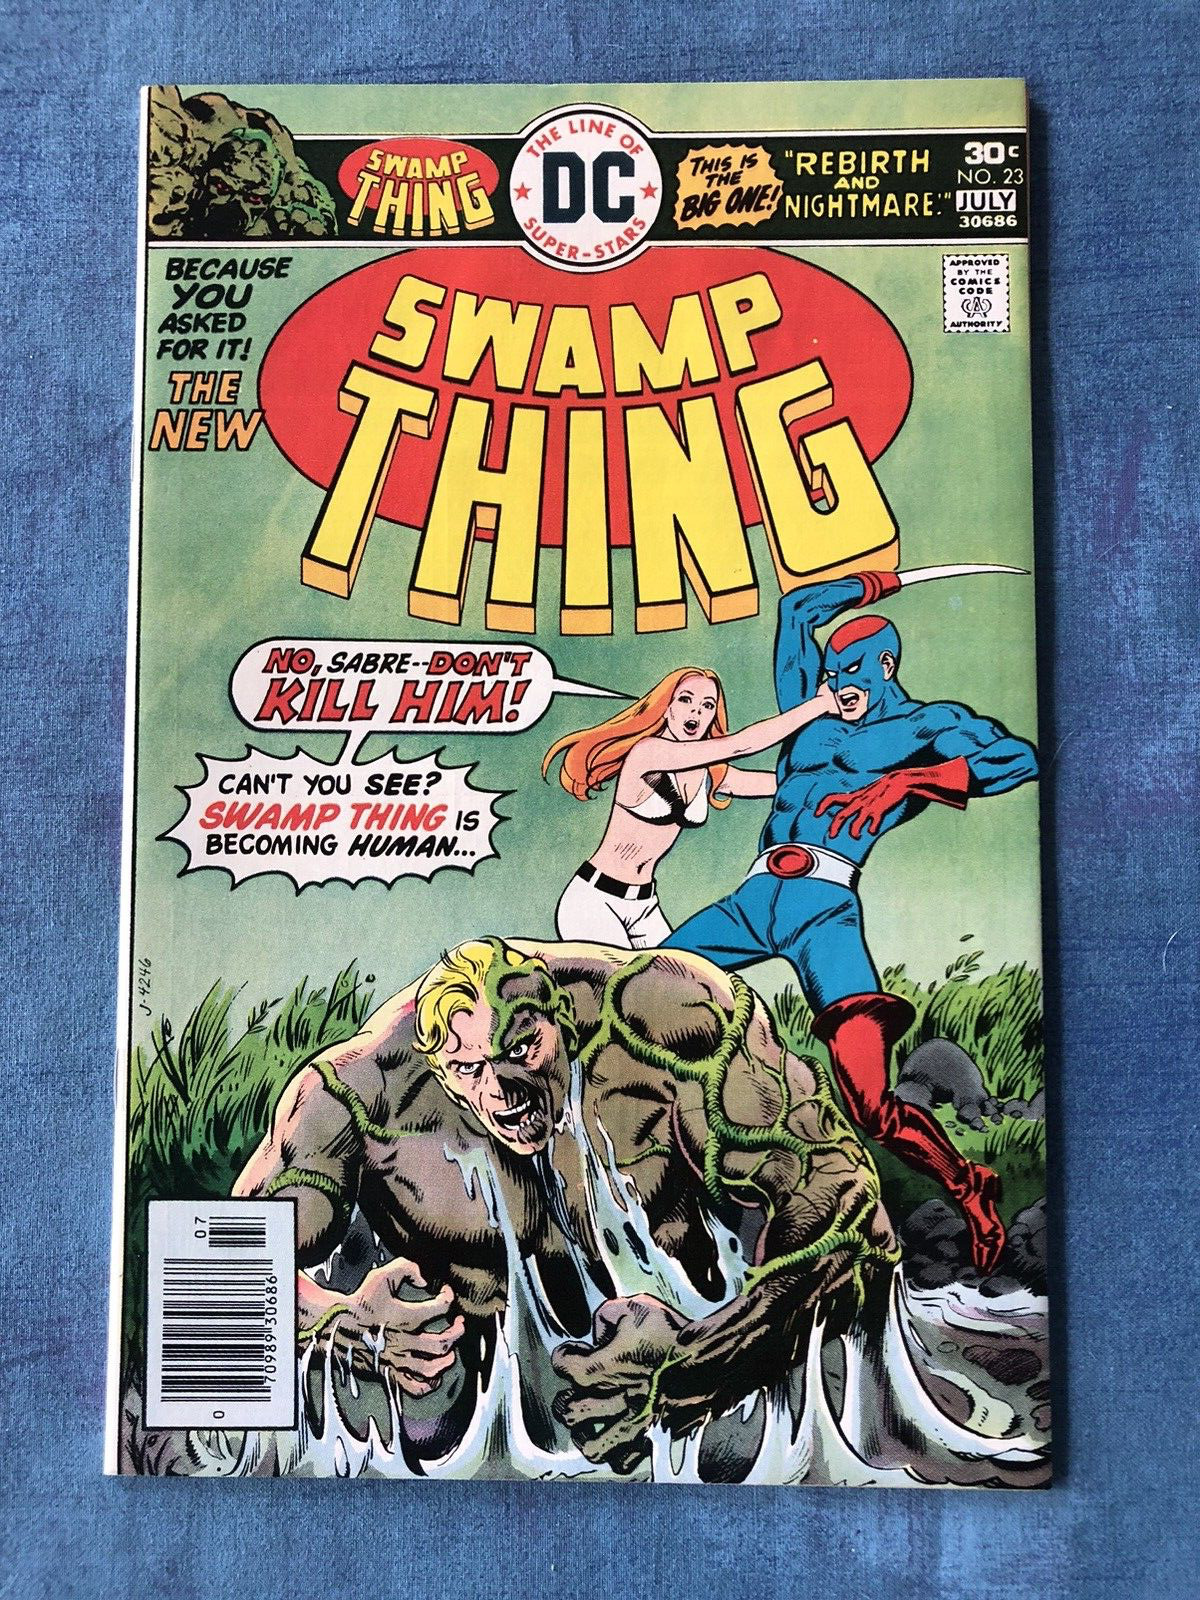 SWAMP THING #23  - DC Comics - 1976 - NM - HIGH-GRADE COMIC BOOK